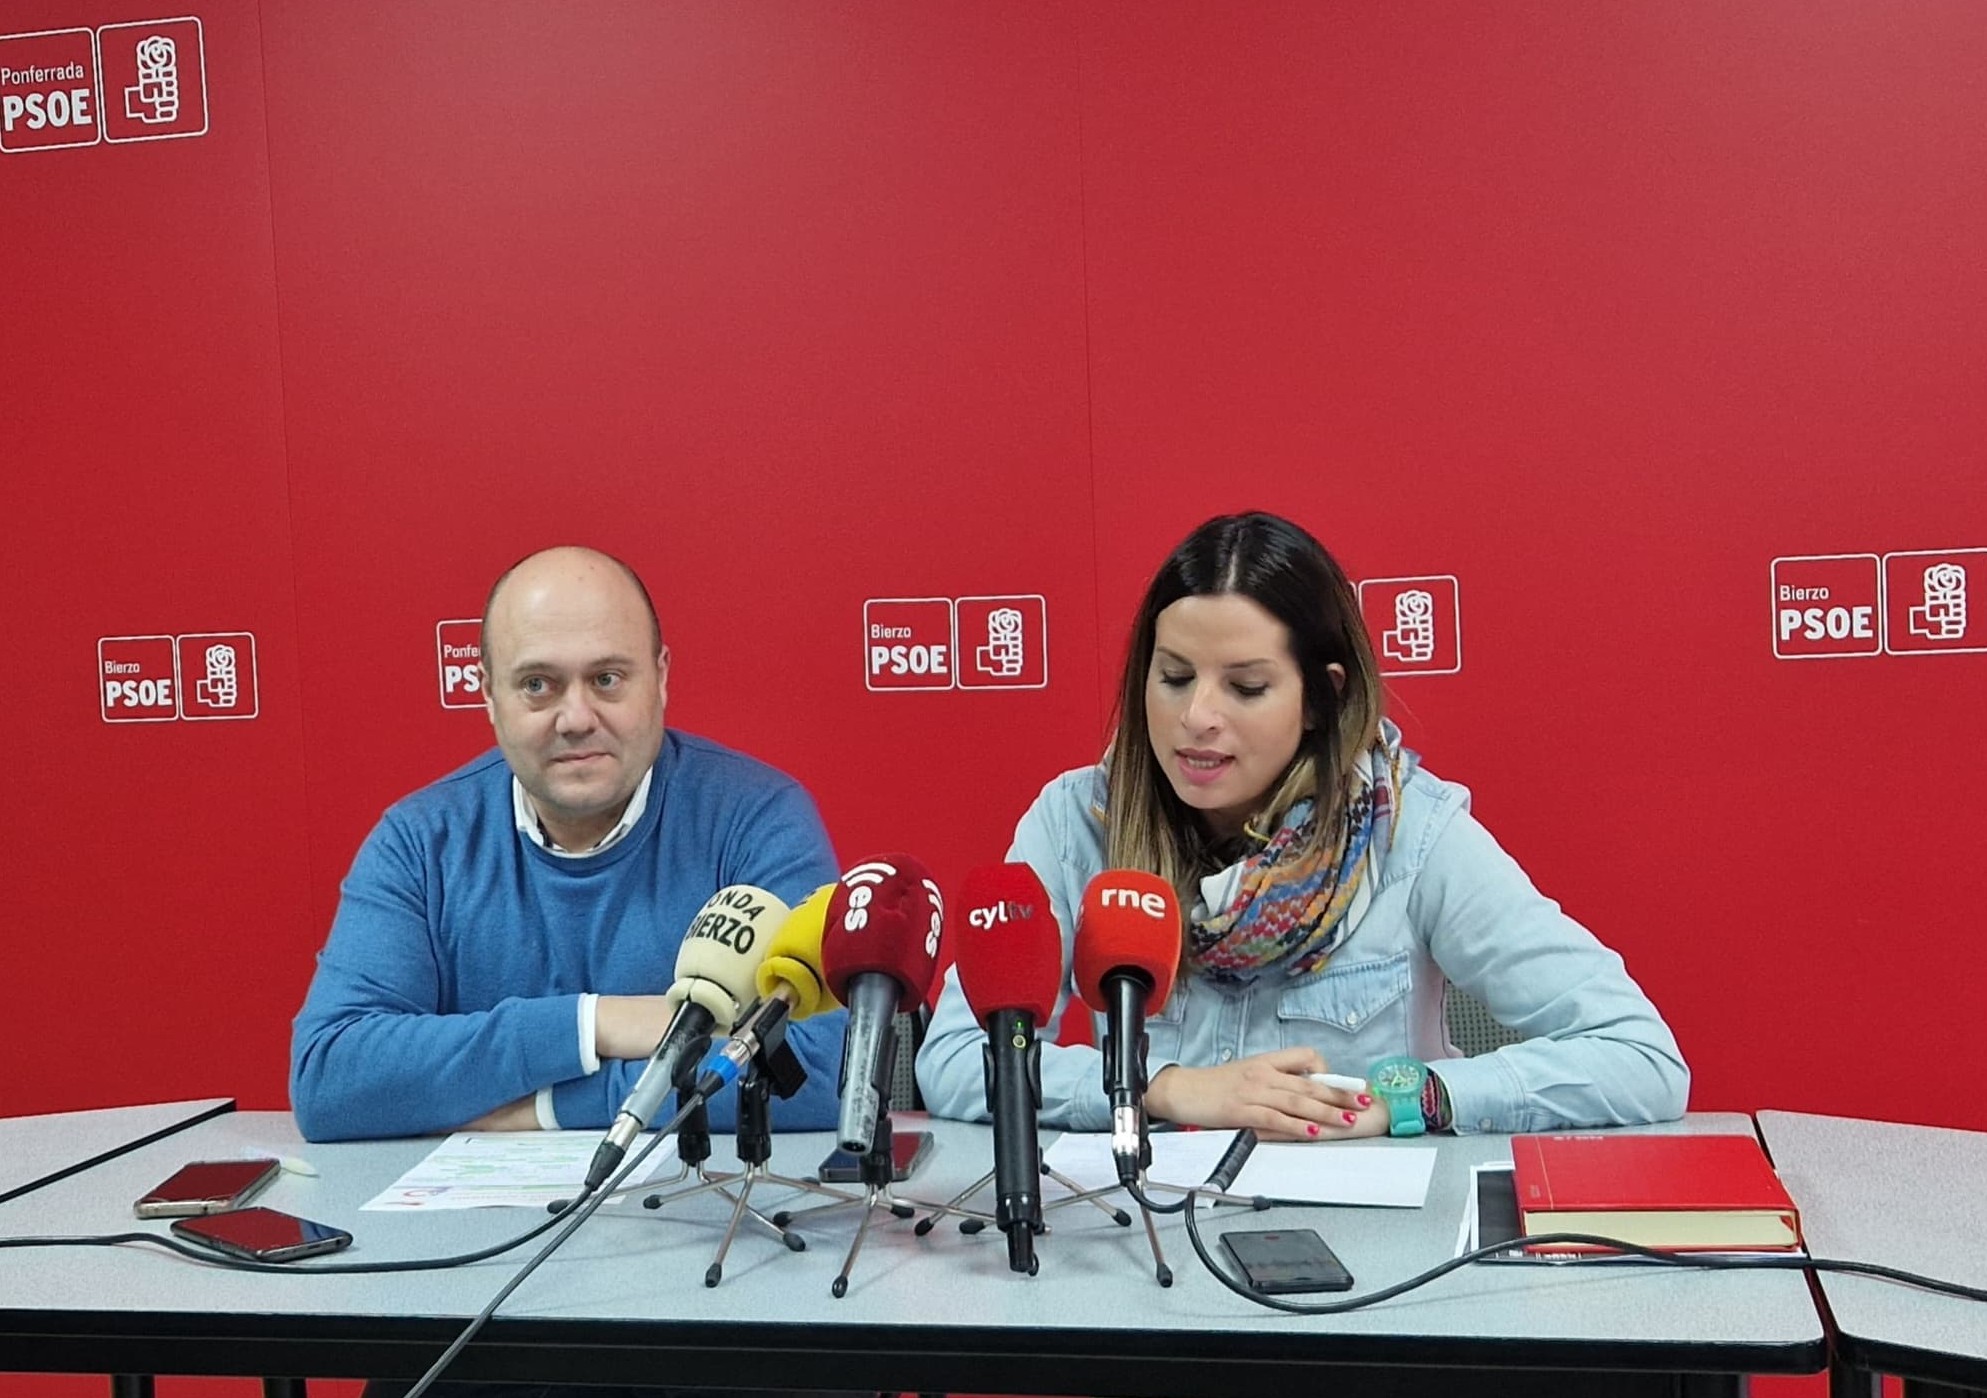 El PSOE de León reitera el apoyo del Gobierno al sector agrario con ayudas millonarias frente a la inacción de la derecha en la Junta